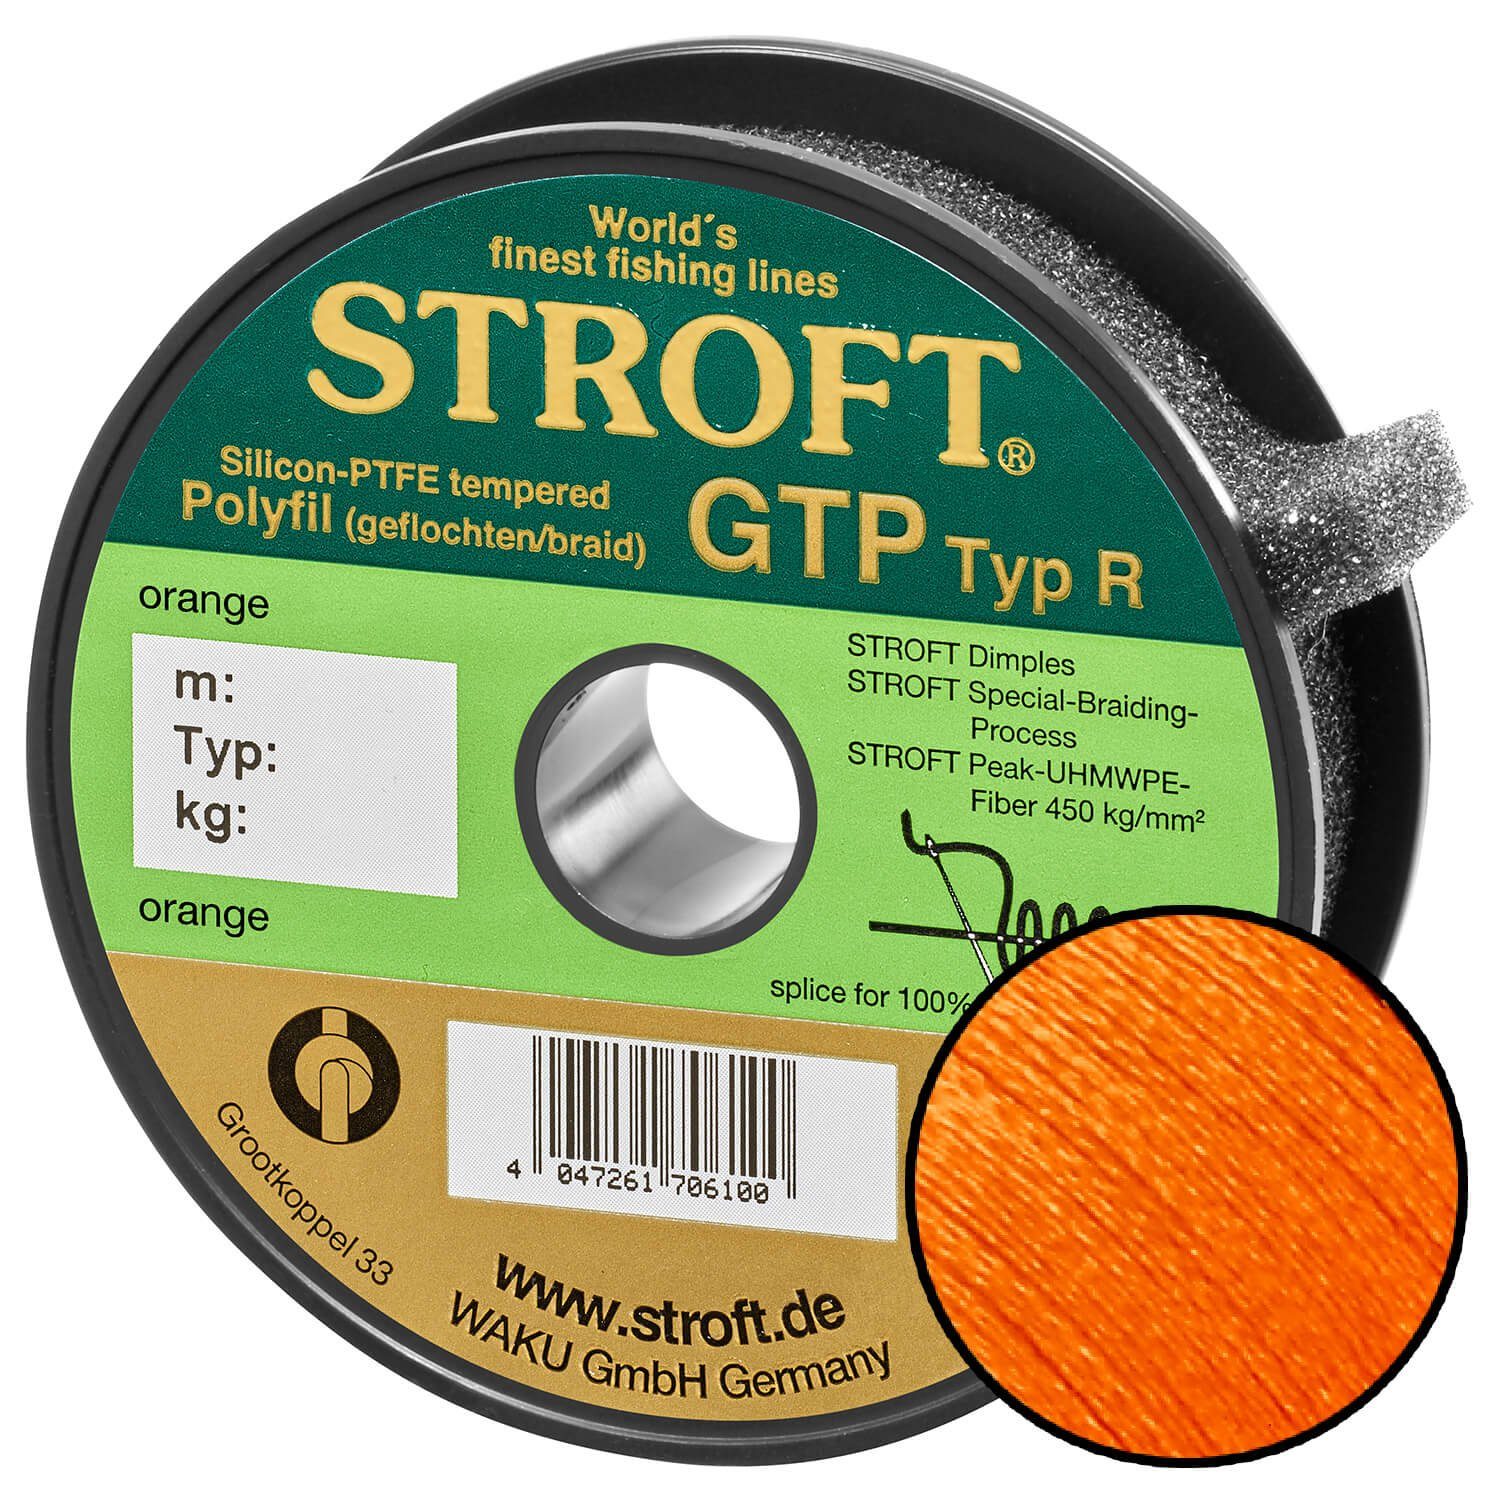 Stroft Angelschnur STROFT GTP Typ R Geflochtene Angelschnur 150m orange, 150 m Länge, 0.15 mm Fadendurchmesser, (1-St), 4.5kg Tragkraft